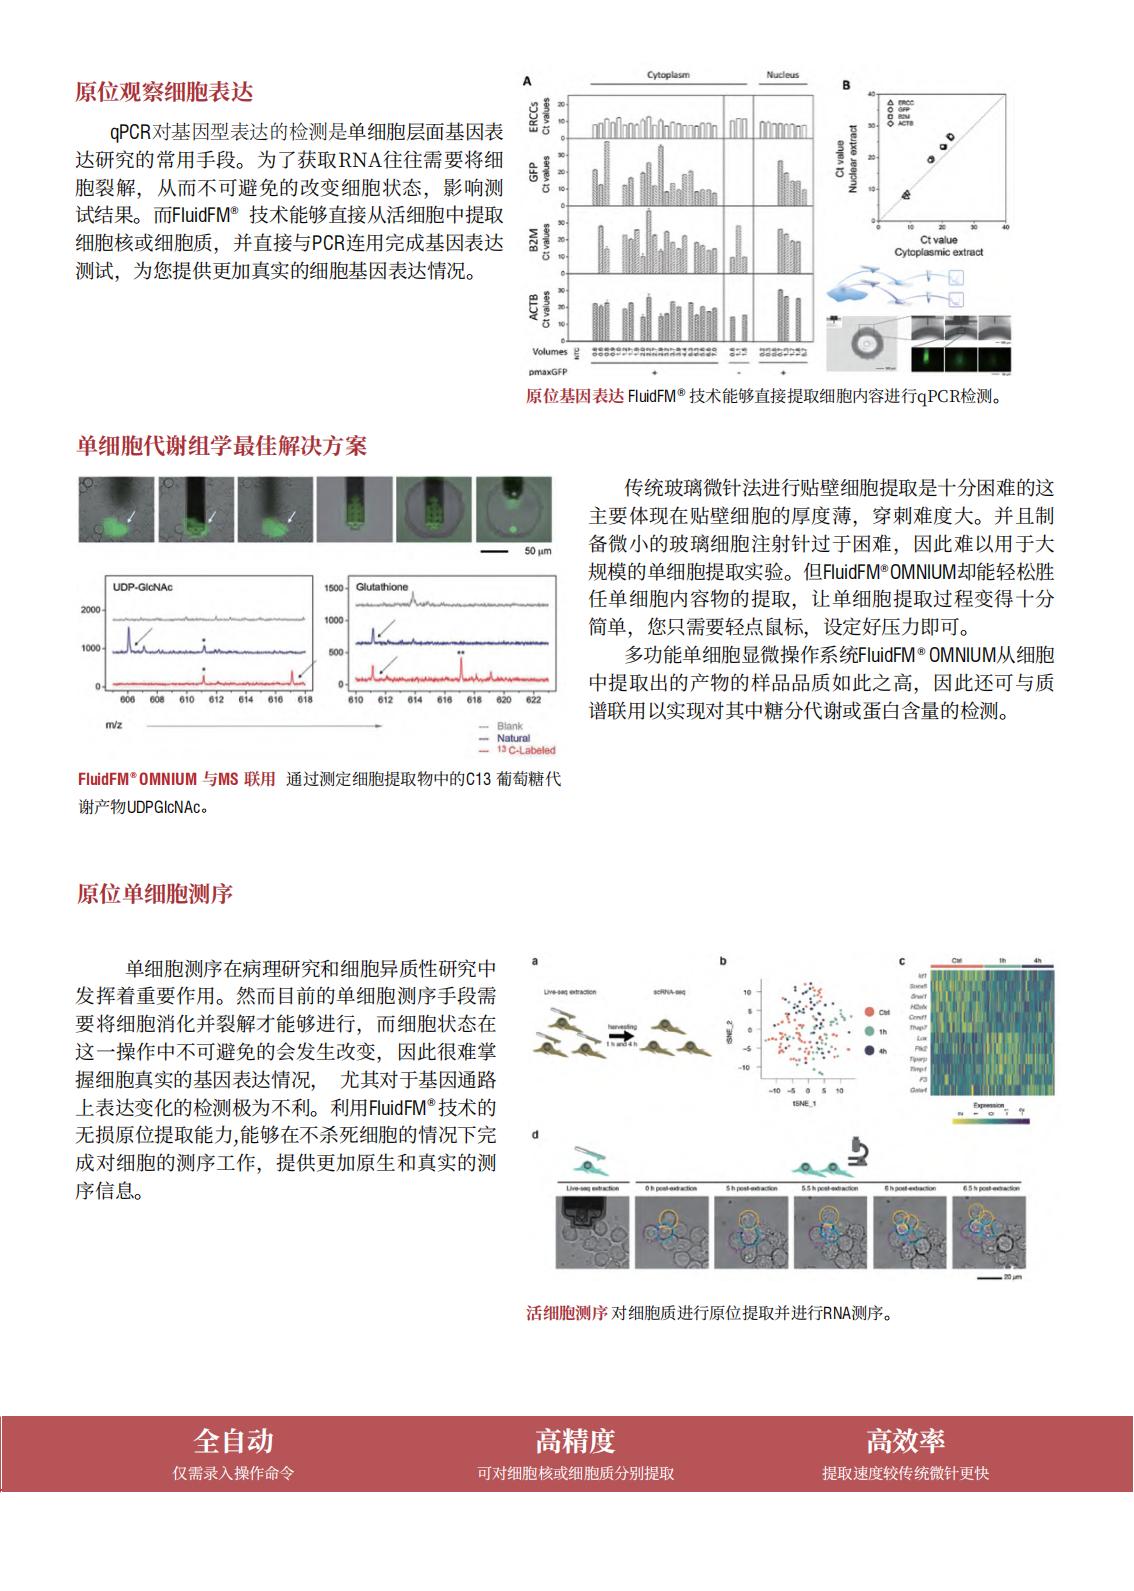 多功能单细胞显微操作系统FluidFM_OMNIUM(图11)